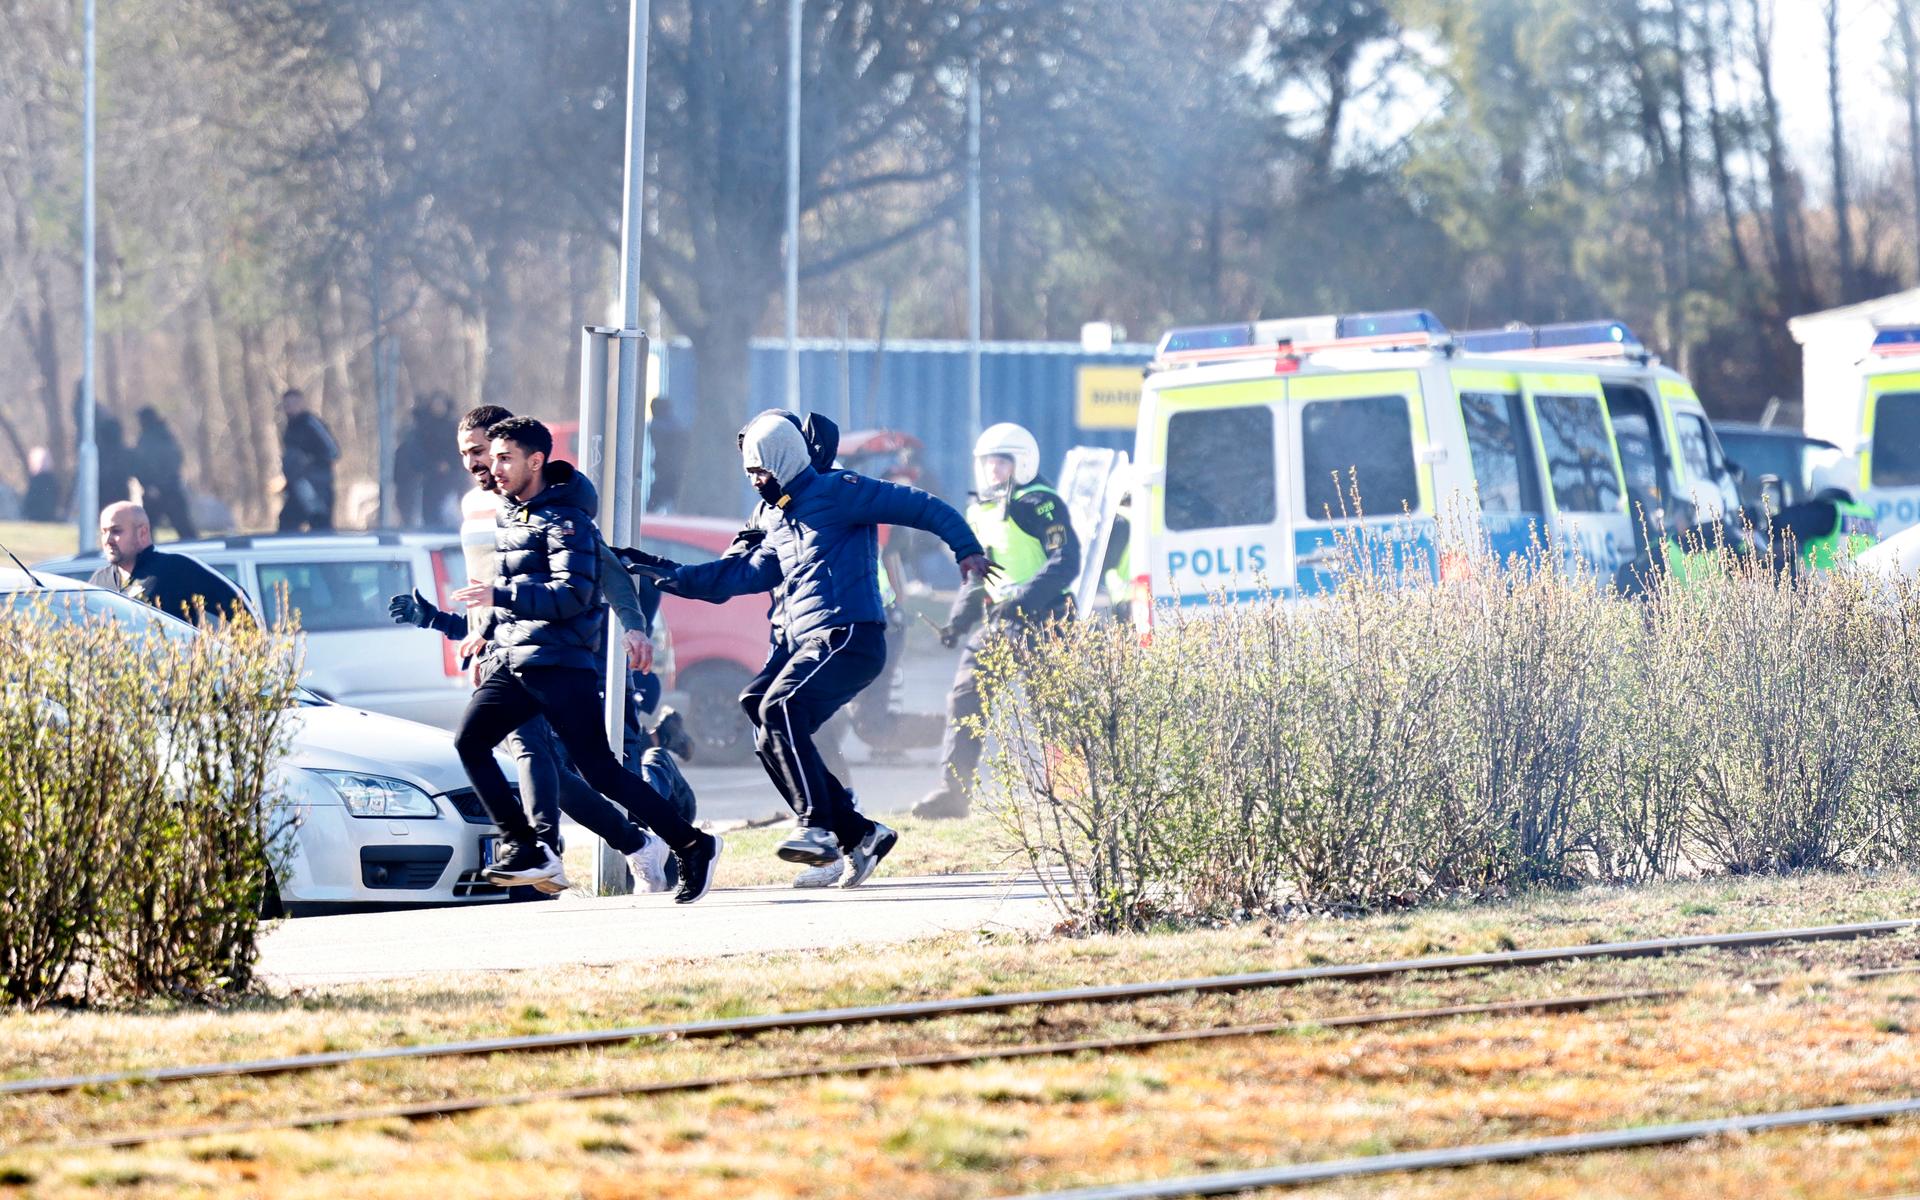 Personer springer från kravallutrustad polis i samband med upplopp i Navestad i Norrköping på påskdagen.Oroligheterna utlöstes av att den högerextrema provokatören Rasmus Paludan har sagt att han ska återvända till Östergötland för nya demonstrationer under dagen.